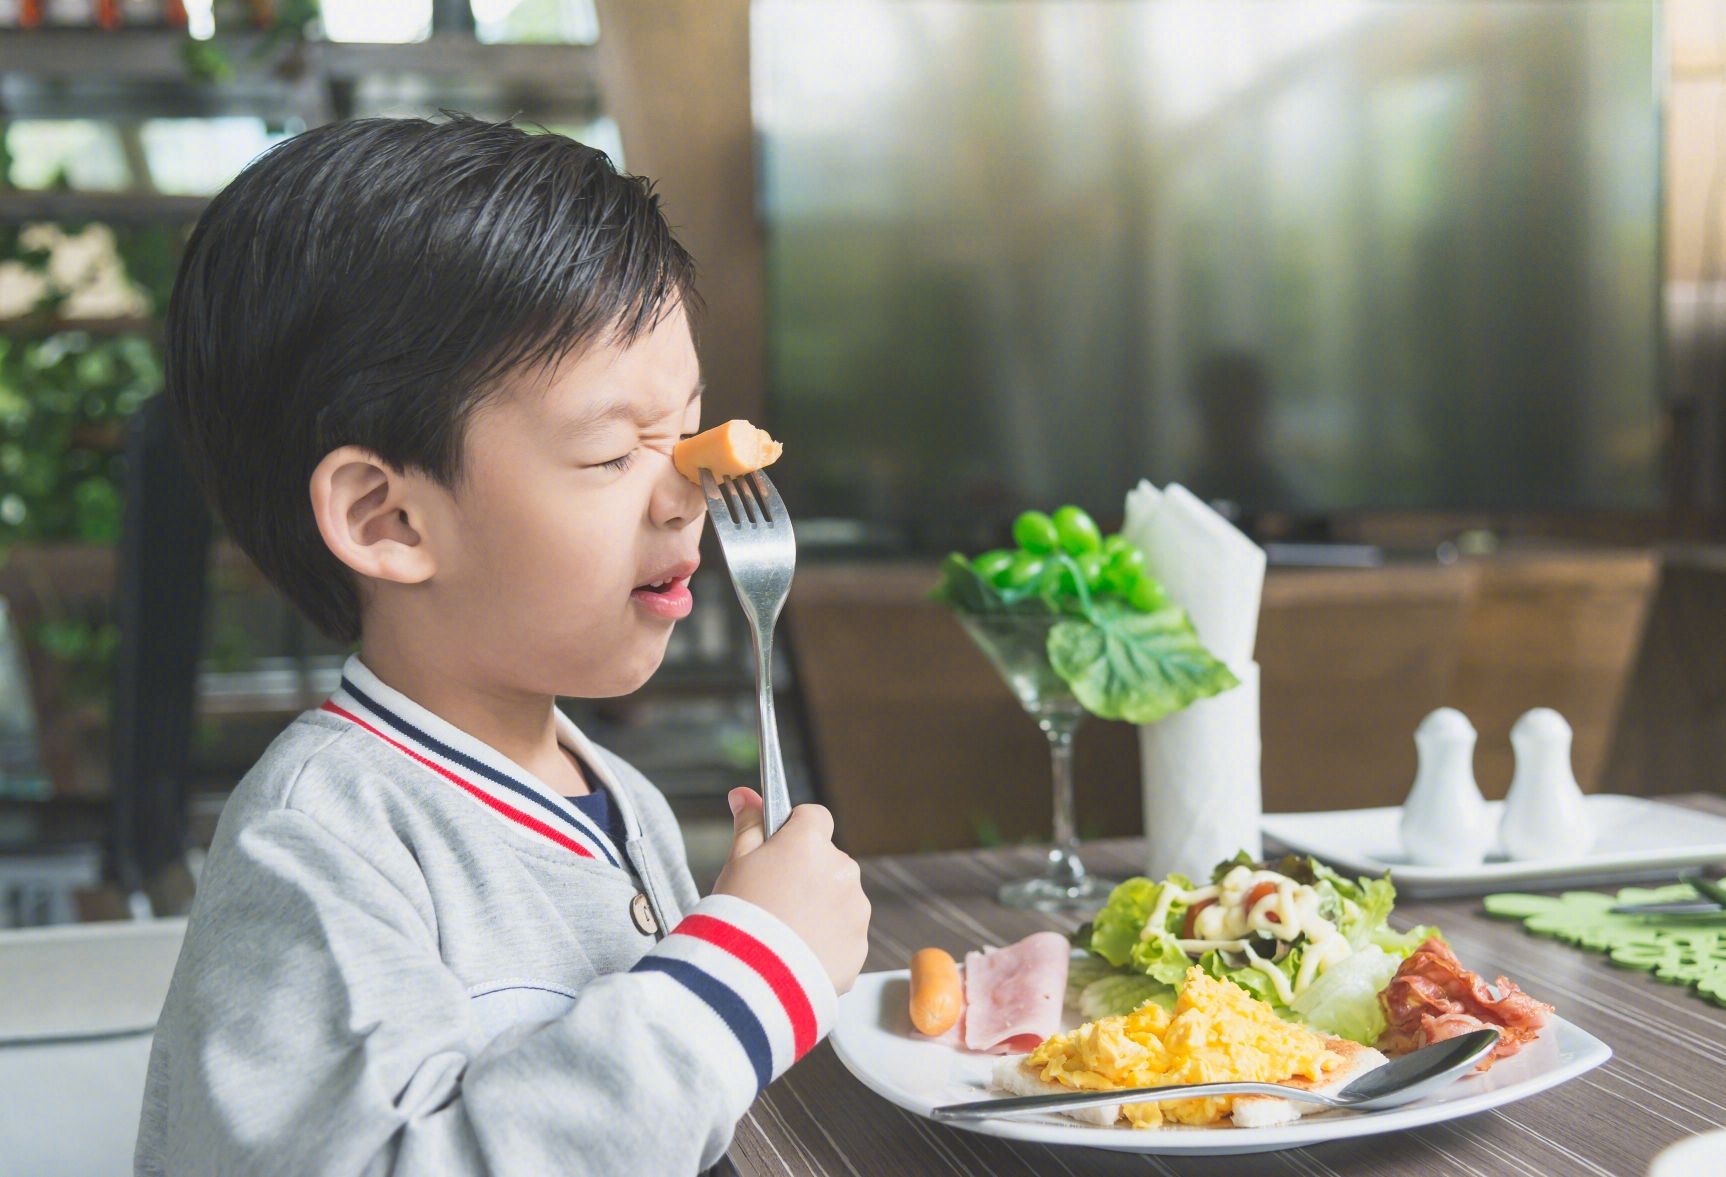 生长迟缓的孩子饮食应该注意哪些调理